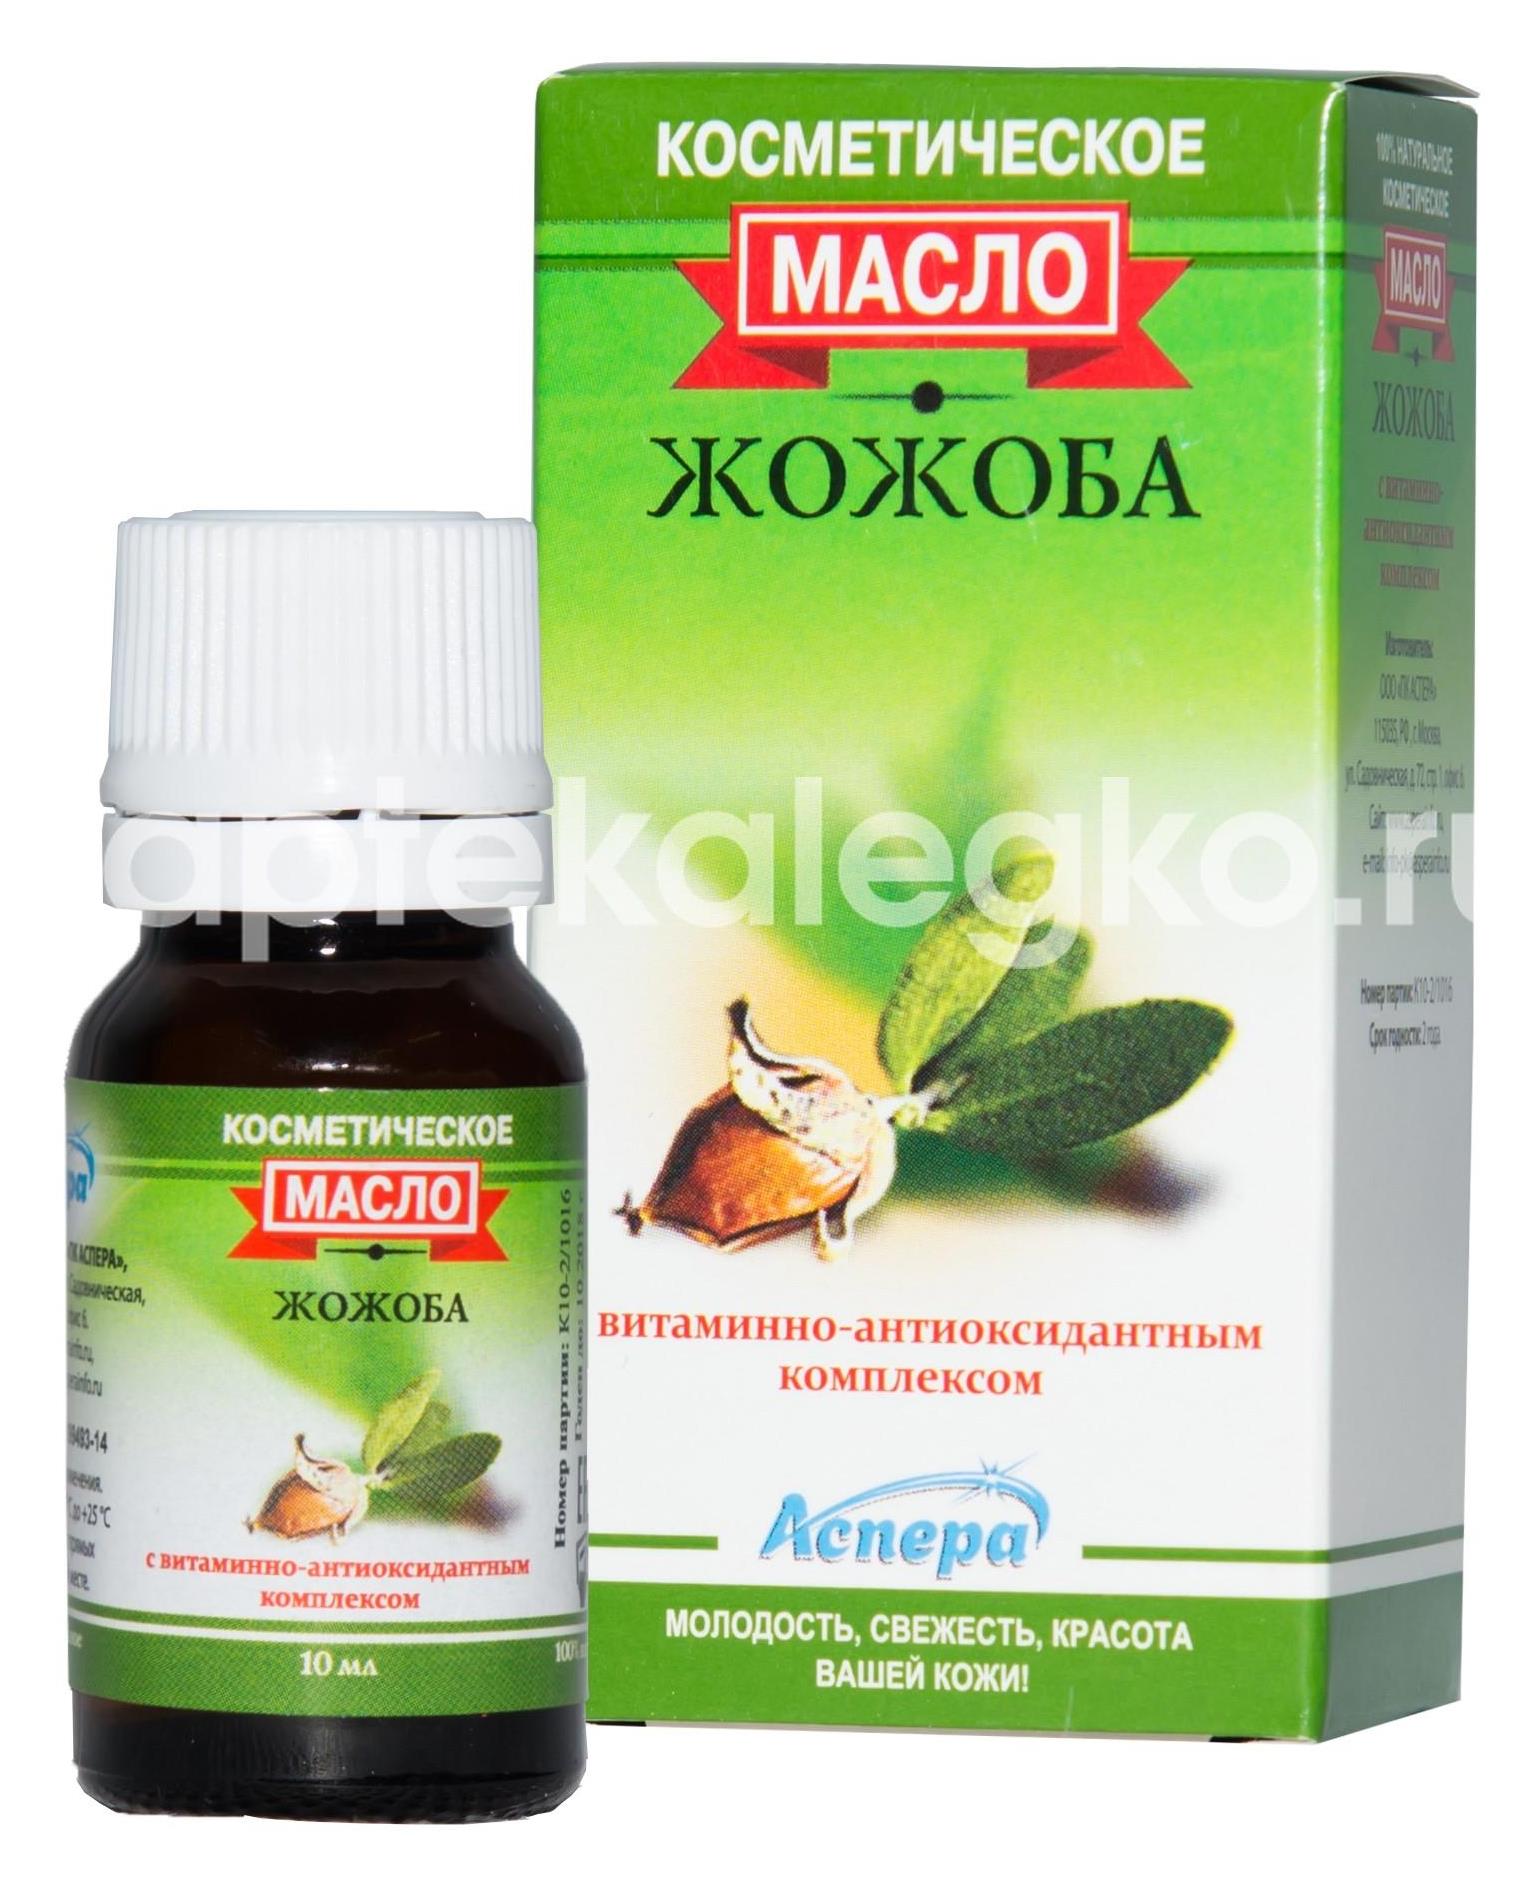 Аспера масло жожоба косметическое витаминно - антиоксидантным комплексом 10мл. - 1